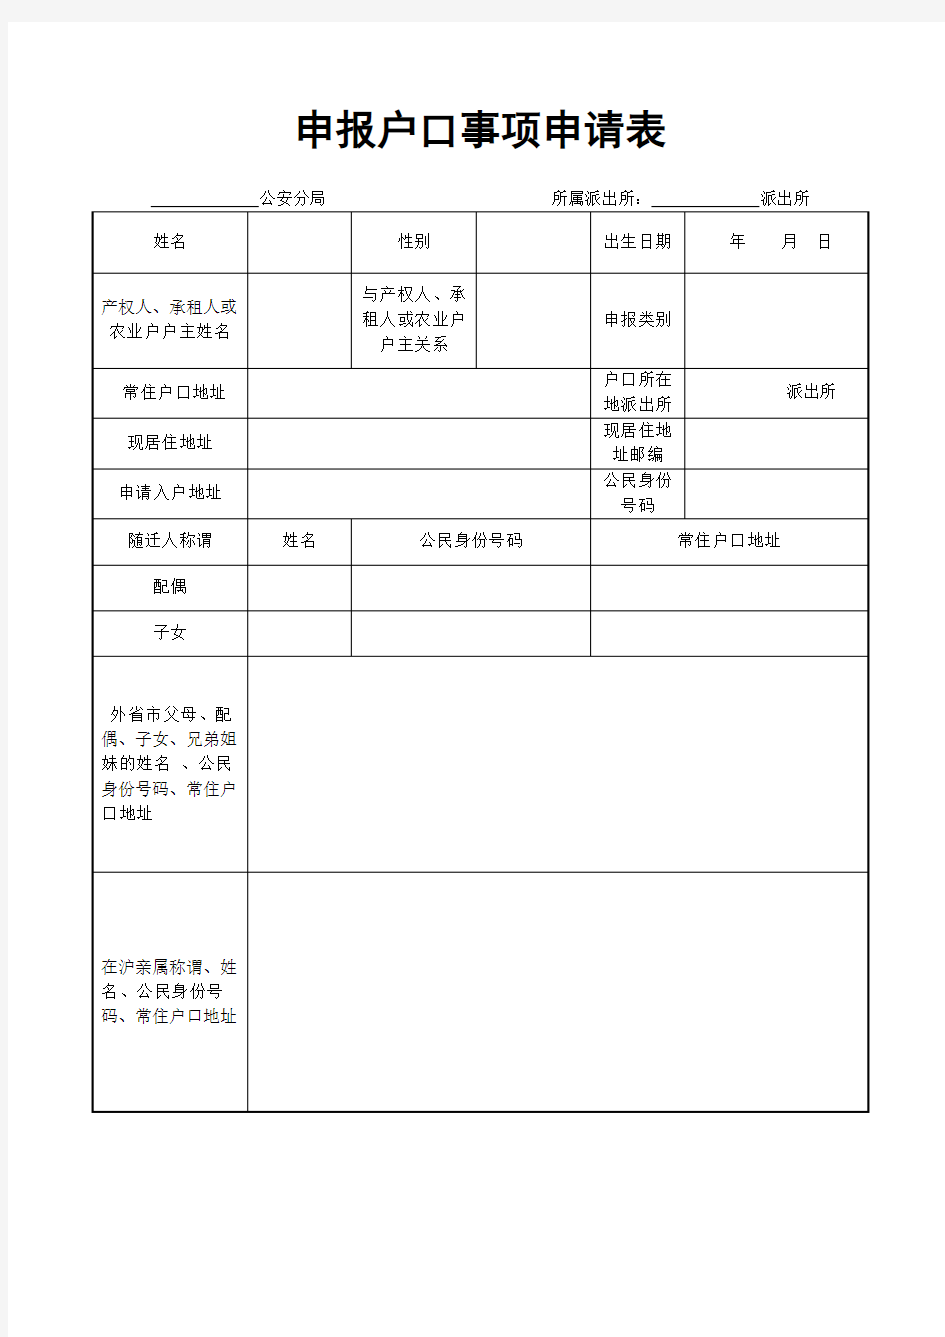 上海市外省市户口迁沪落户审批申请表(空白表格)